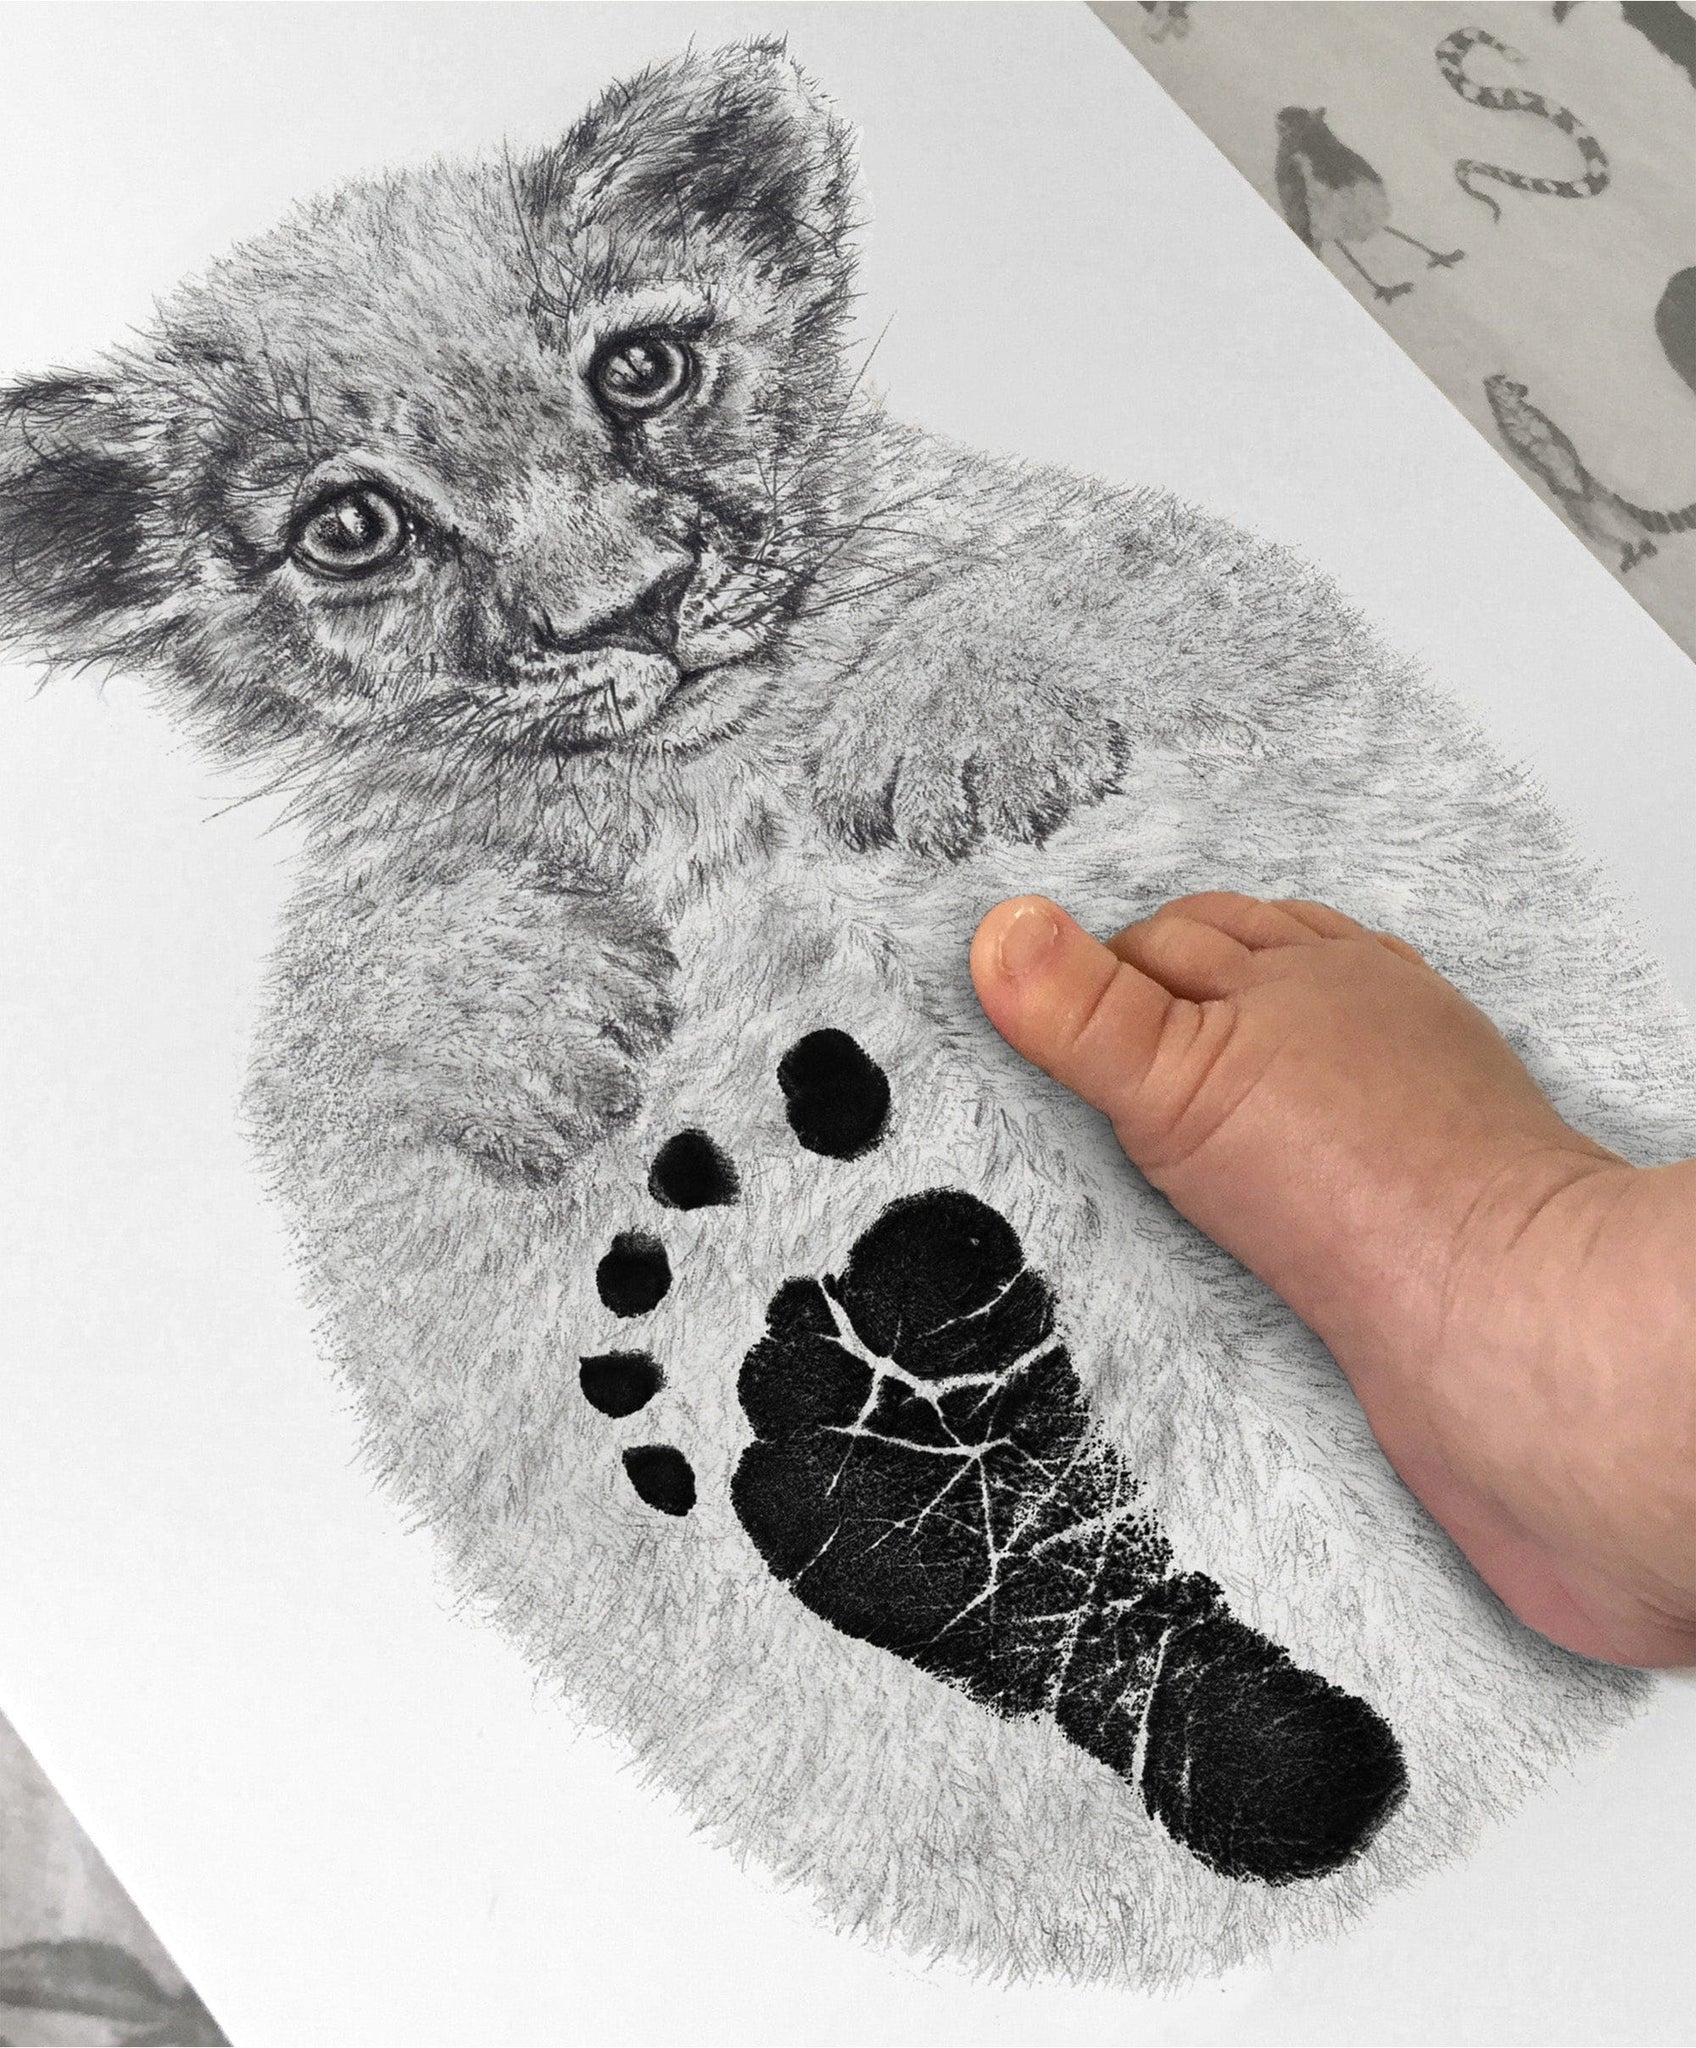 Footprint Drawing by Aloysius Patrimonio